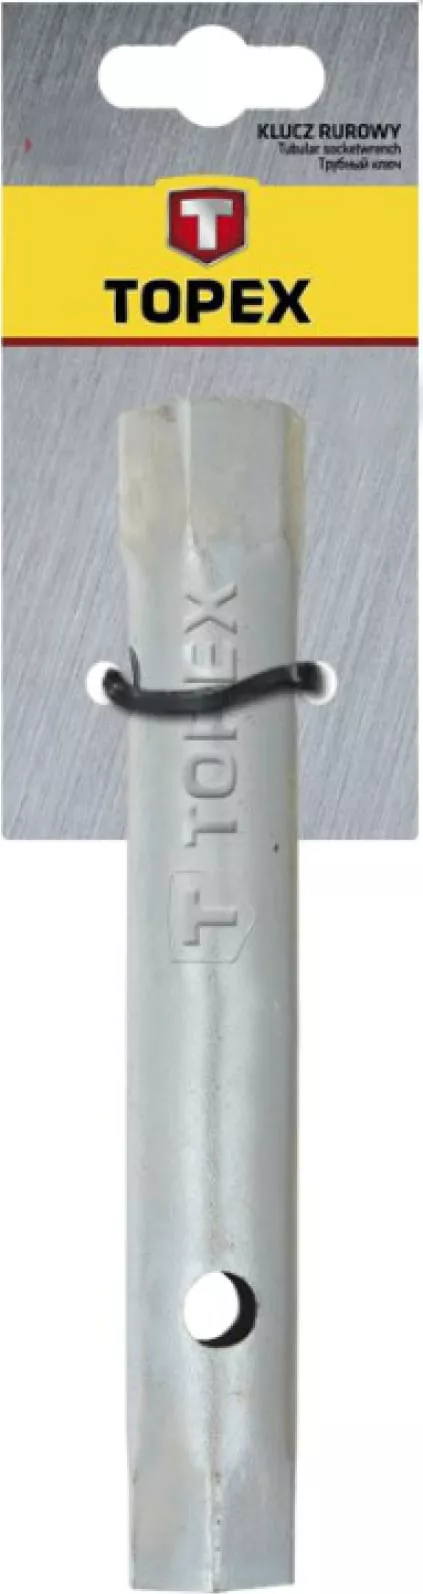 Ключ торцовый двусторонний 25 мм x 28 мм TOPEX